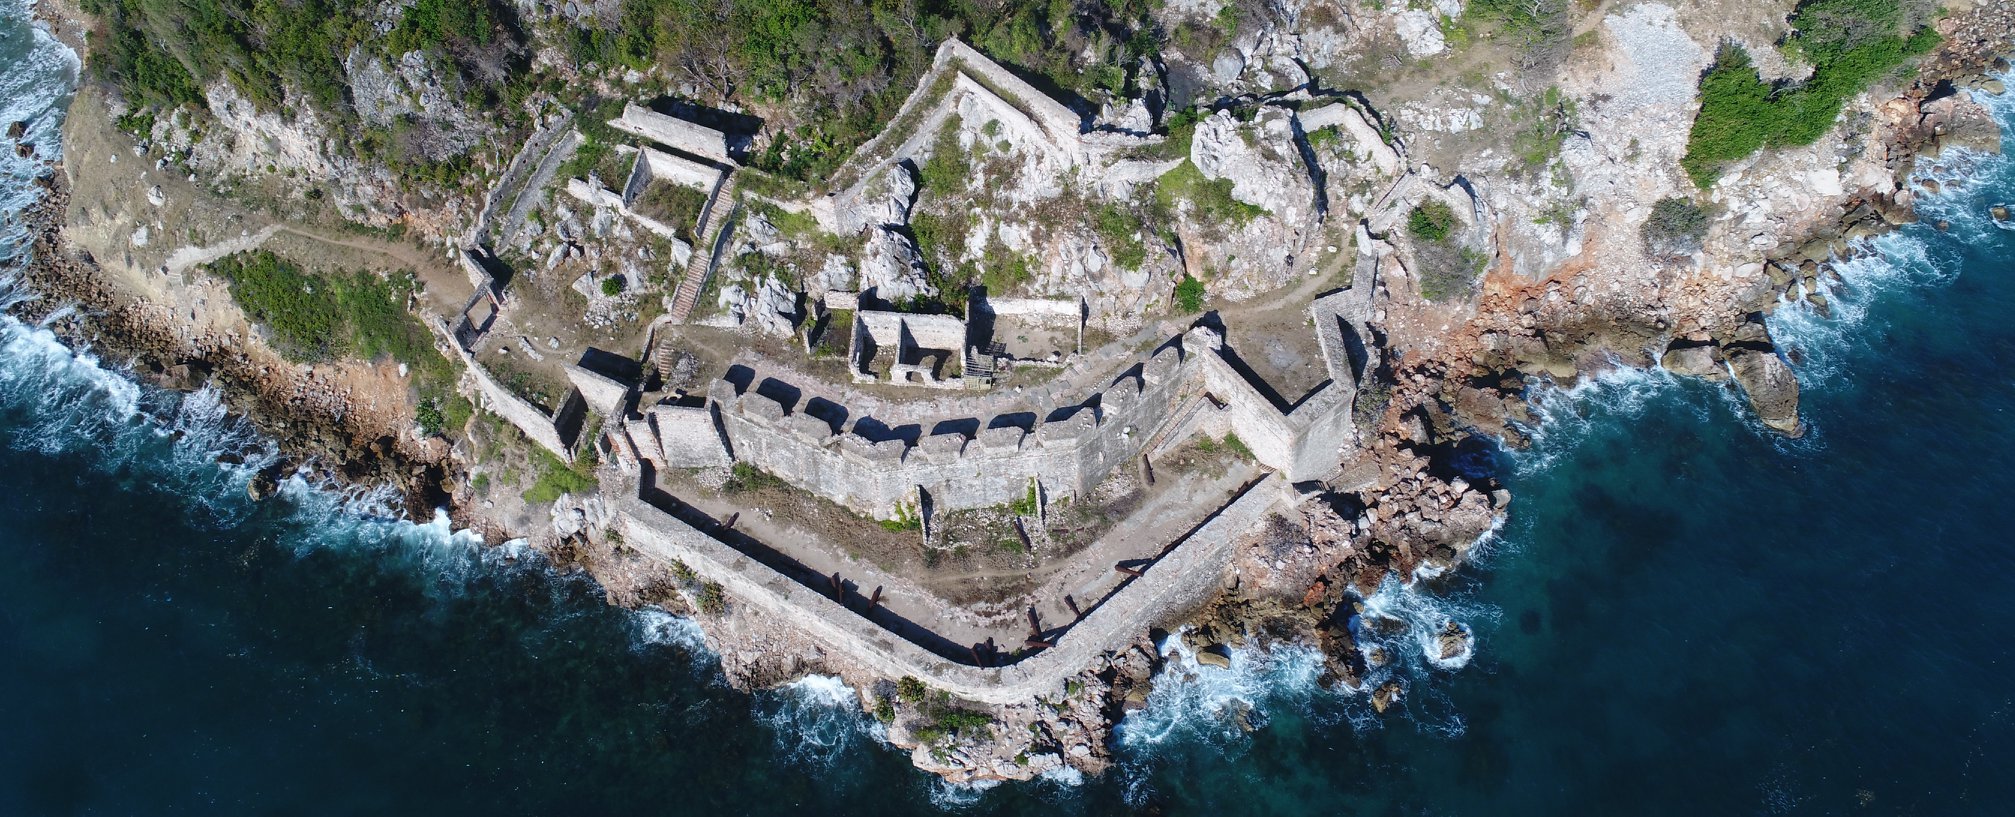 Fort Picolet I